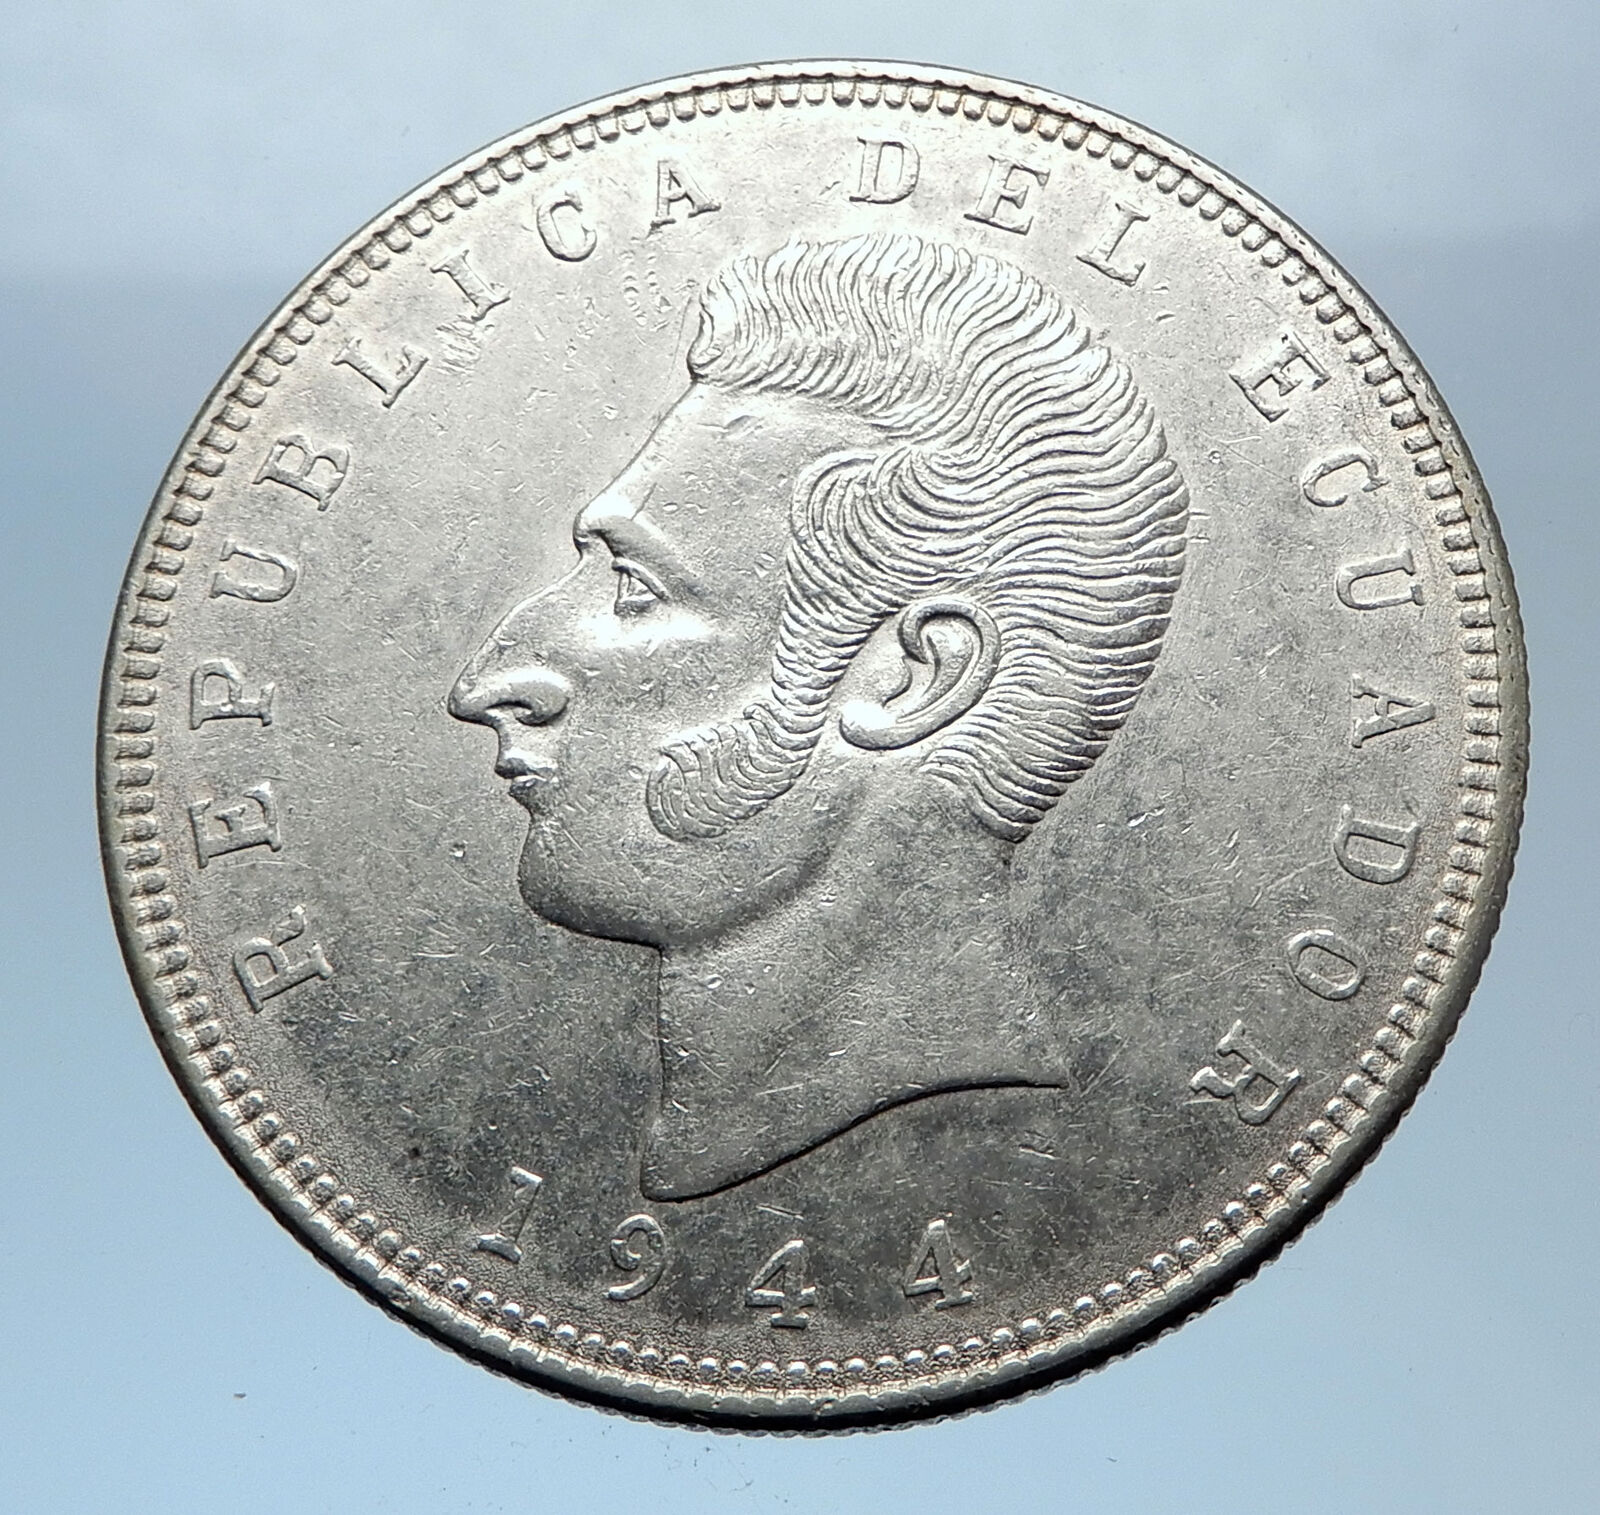 1944 EQUADOR Antonio Jose de Sucre y Alcala Antique Silver 5 Sucres Coin i72411